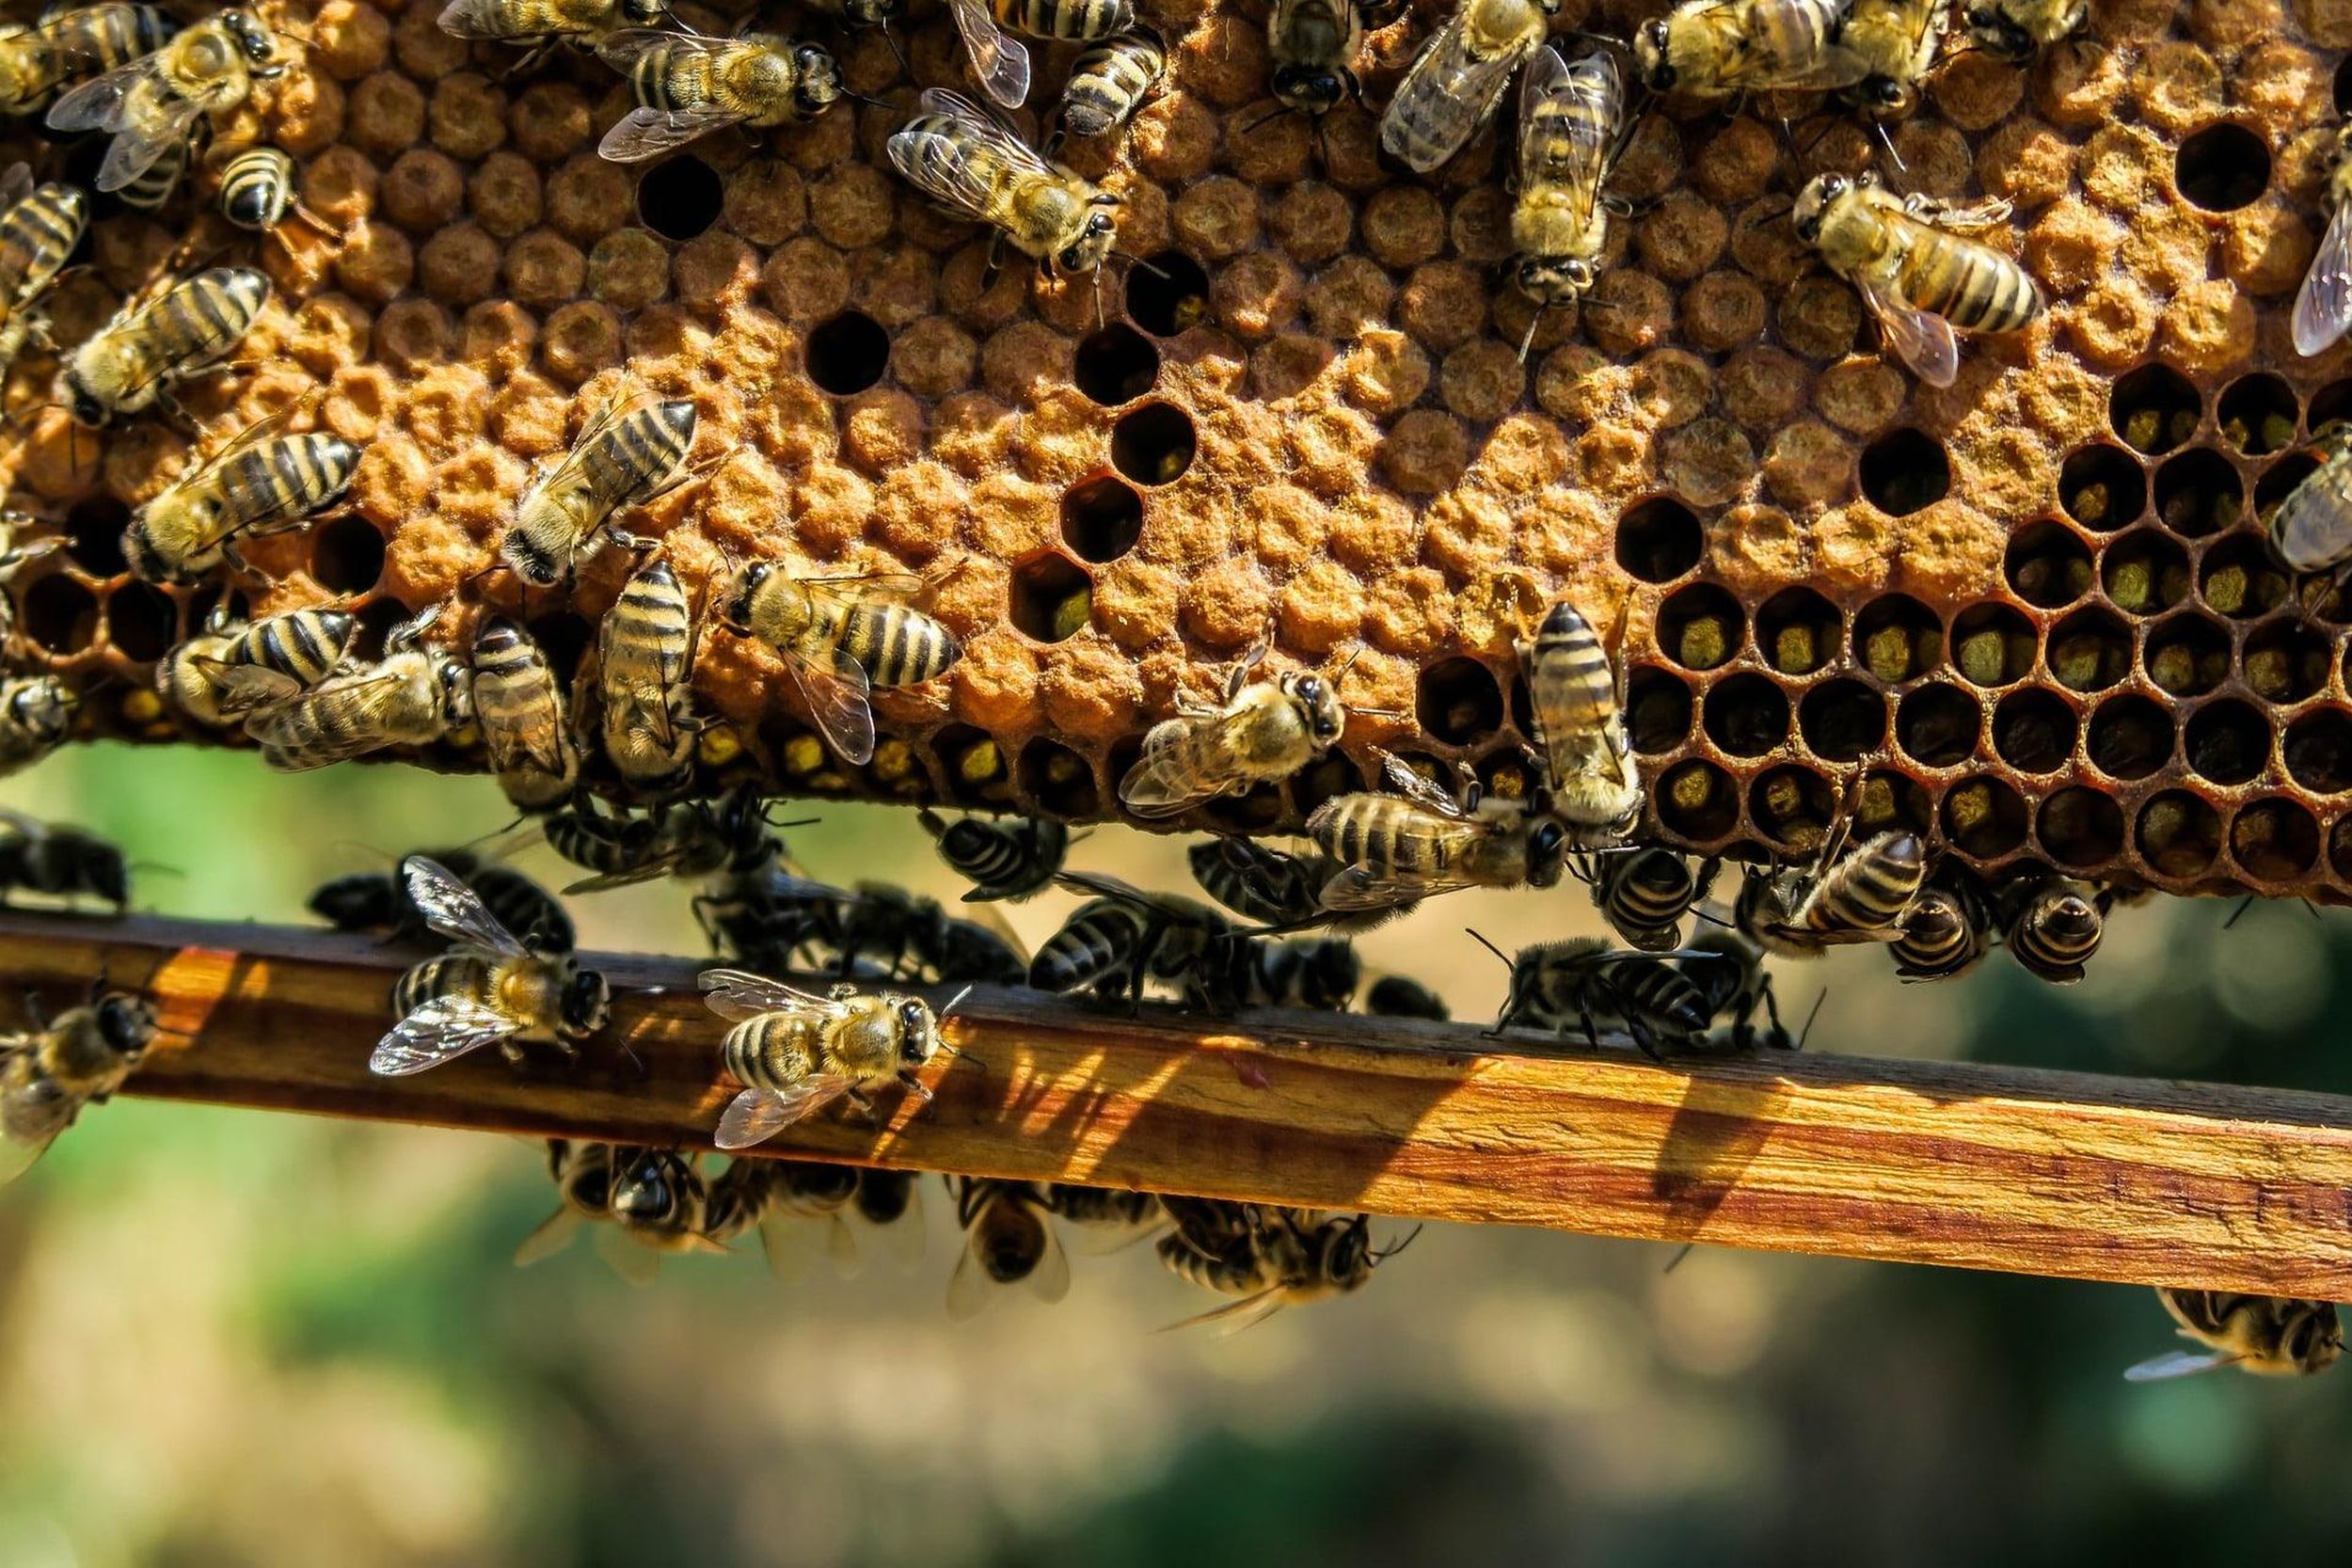 razmnožavanje pčelinjih zajednica